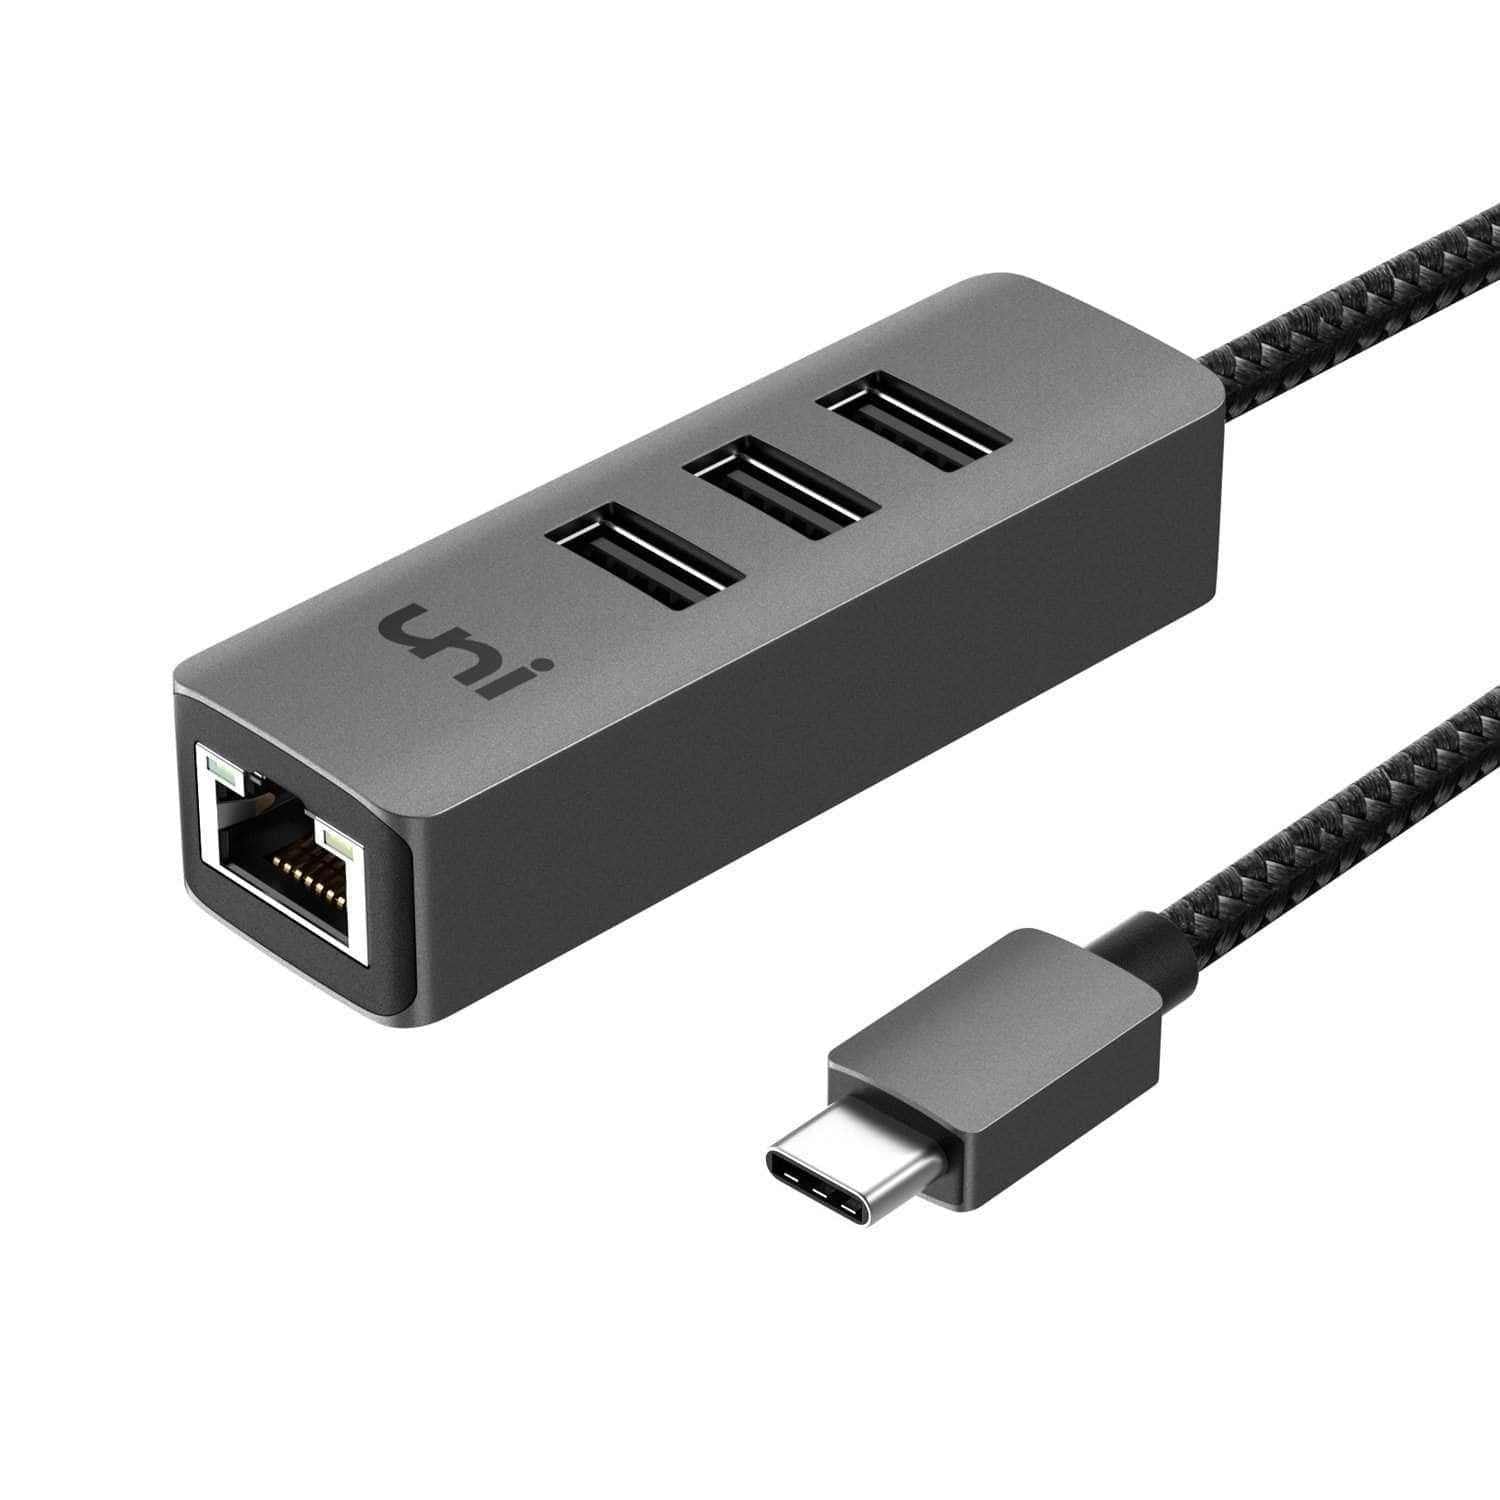 USB-C Type C to USB 3.0 4 Port Hub Splitter For PC Mac Phone MacBook Pro  iPad, 1 - Kroger